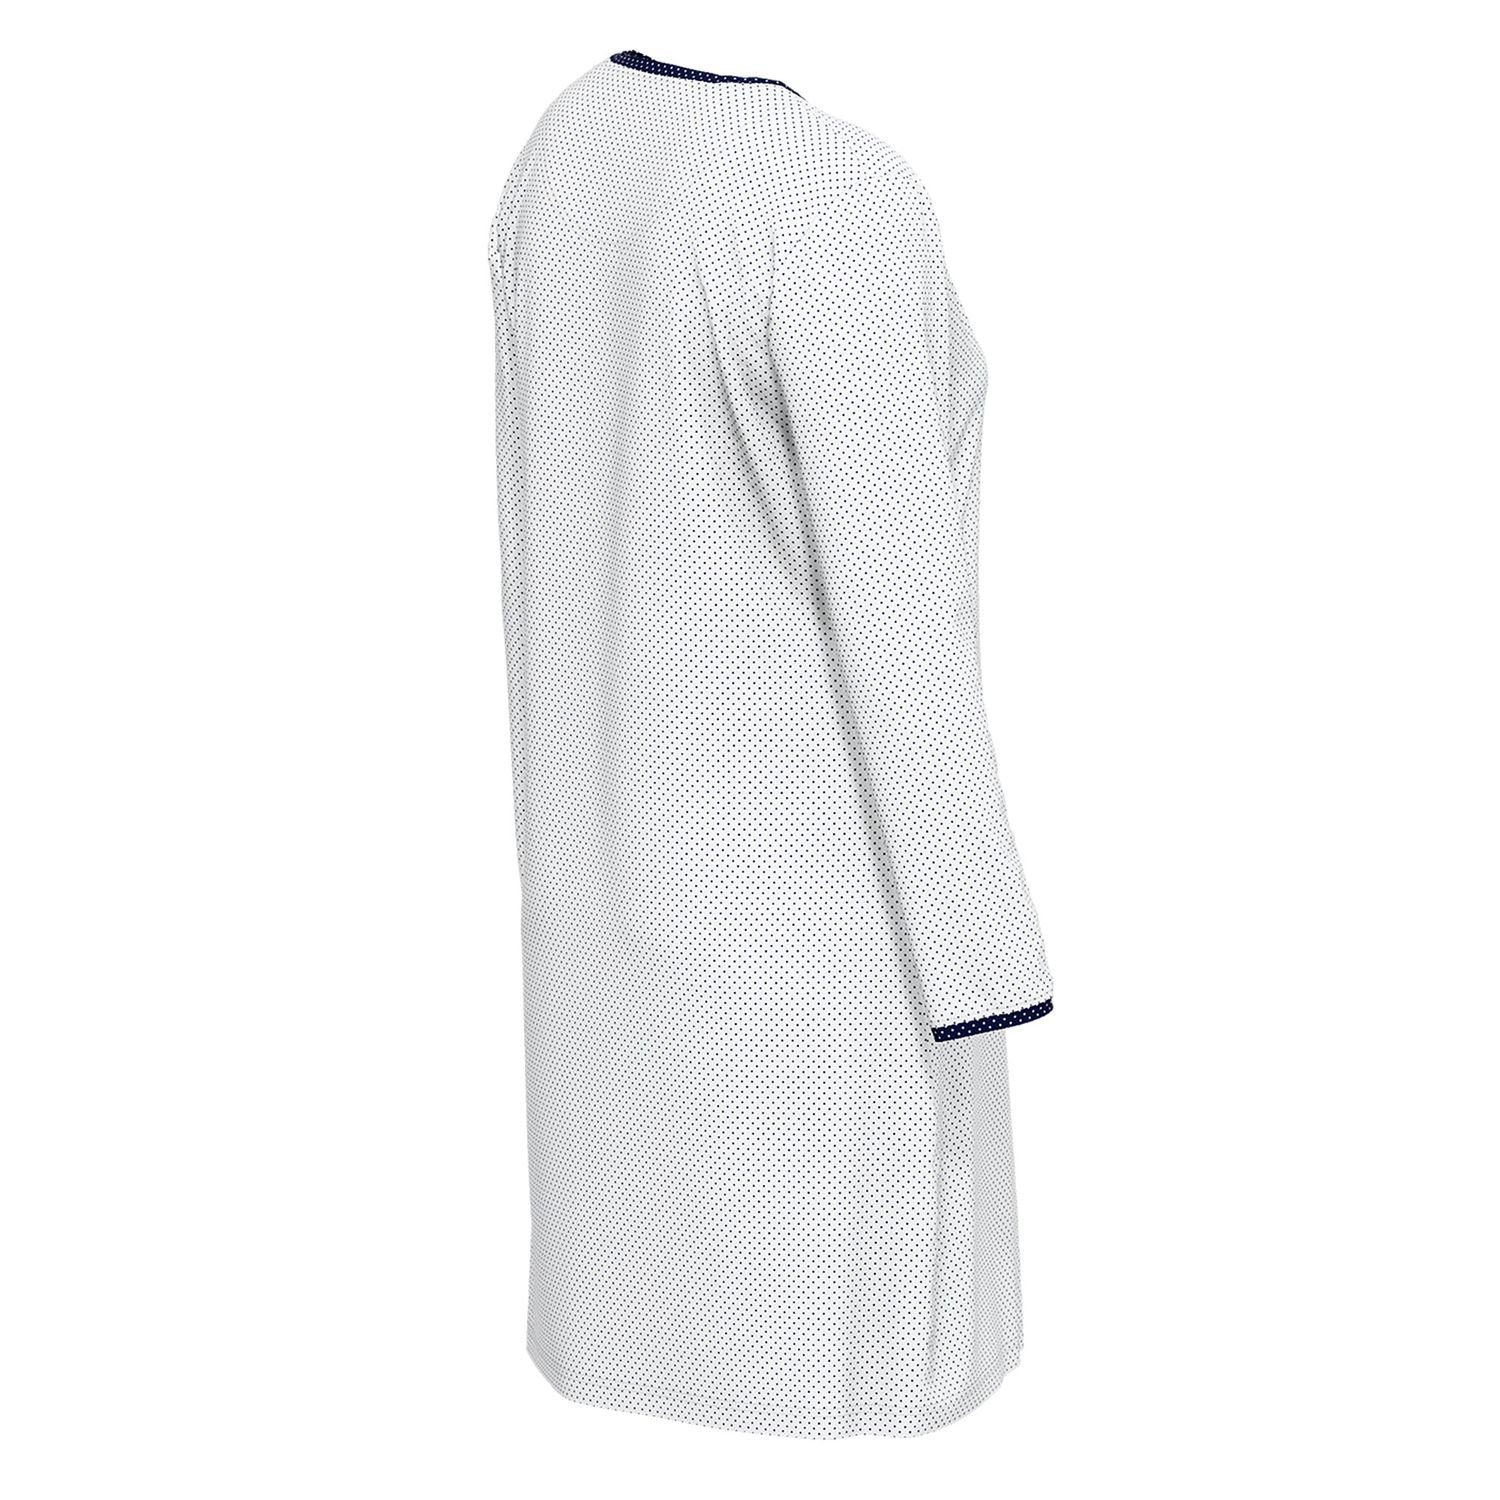 langarm, / weiß Pure Nachthemd mit navy Knöpfe, Henley-Auschnitt, gepunktet Baumolle bequem, GÖTZBURG weich, reine Cotton